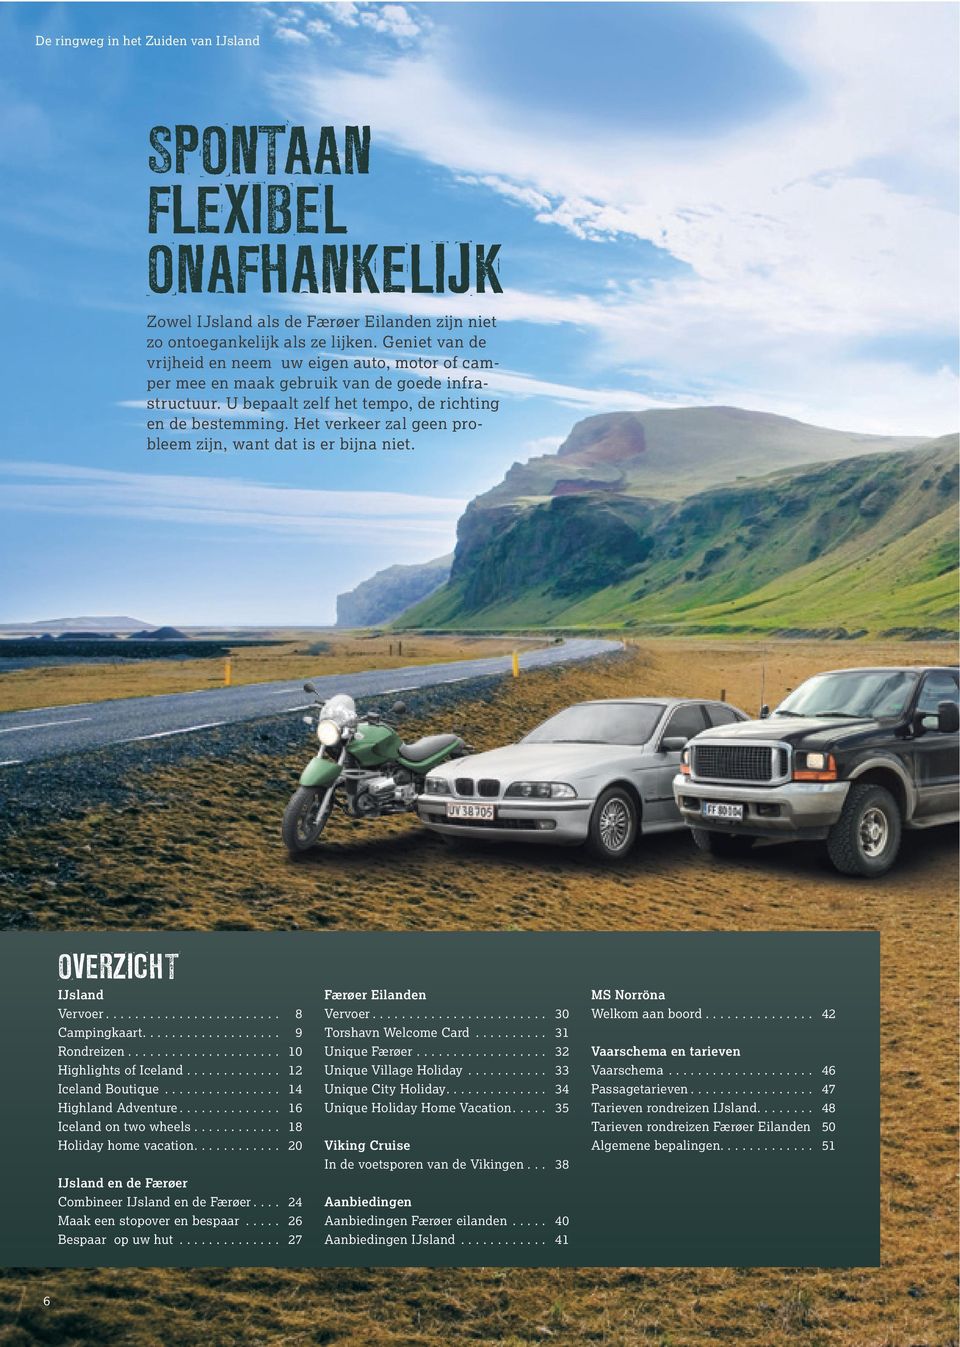 Het verkeer zal geen probleem zijn, want dat is er bijna niet. OVERZICHT IJsland Vervoer... 8 Campingkaart.... 9 Rondreizen... 10 Highlights of Iceland... 12 Iceland Boutique................ 14 Highland Adventure.